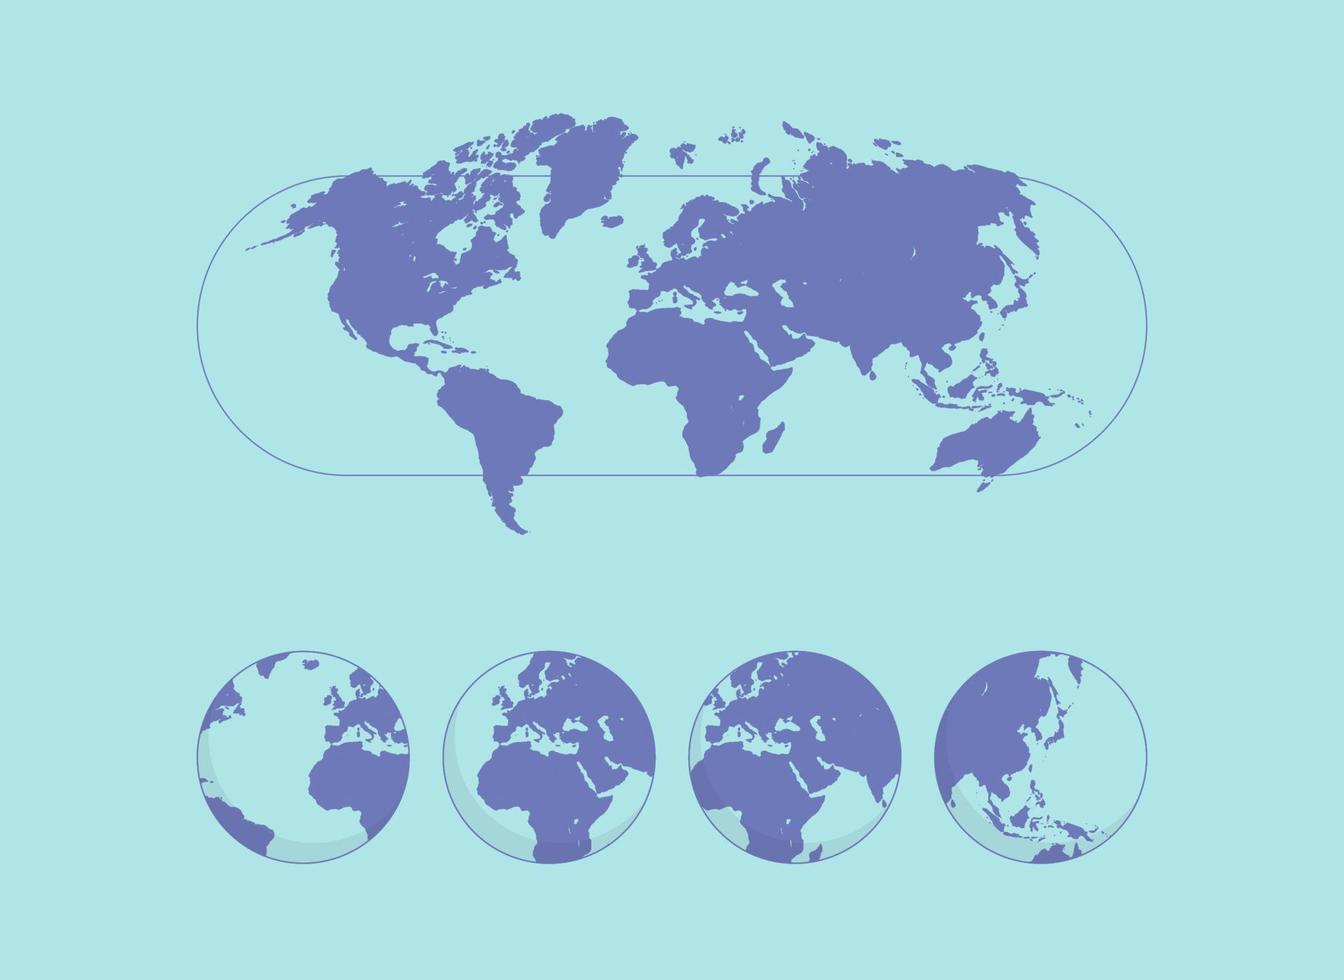 mapa-múndi e globo terrestre em posições diferentes, apresentação de negócios, viagens, turismo, ilustração vetorial plana do conceito de educação. vetor